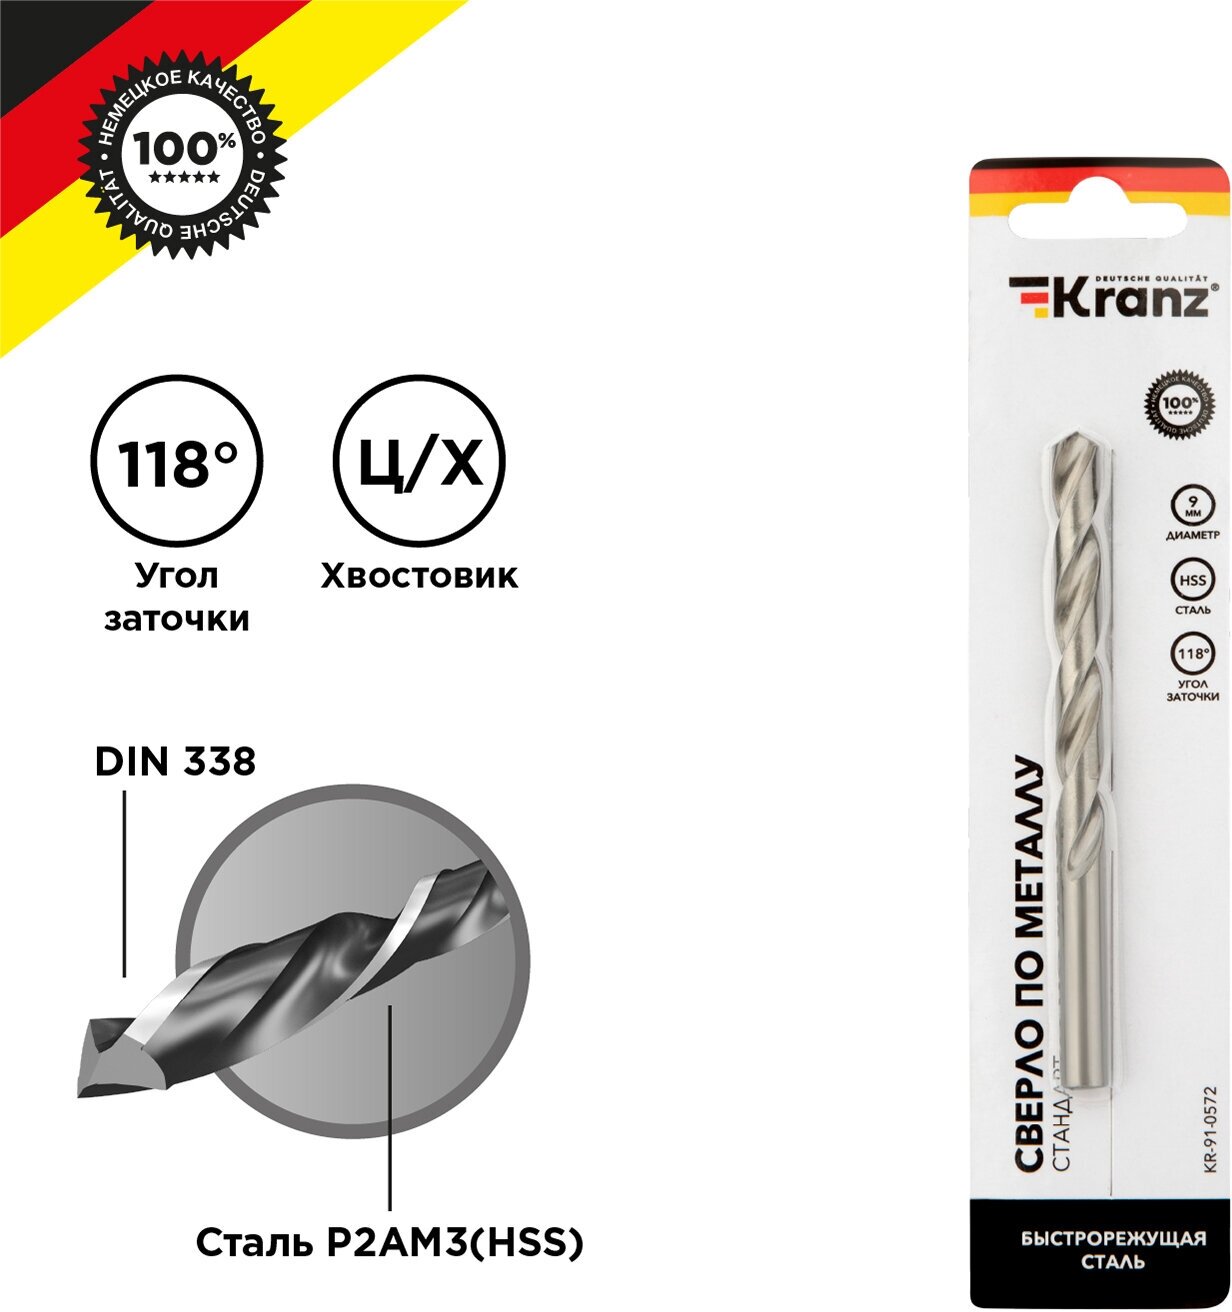 Сверло KRANZ по металлу 9,0 мм повышенной прочности с углом заточки 118 градусов HSS, 1 шт. в упаковке, DIN 338